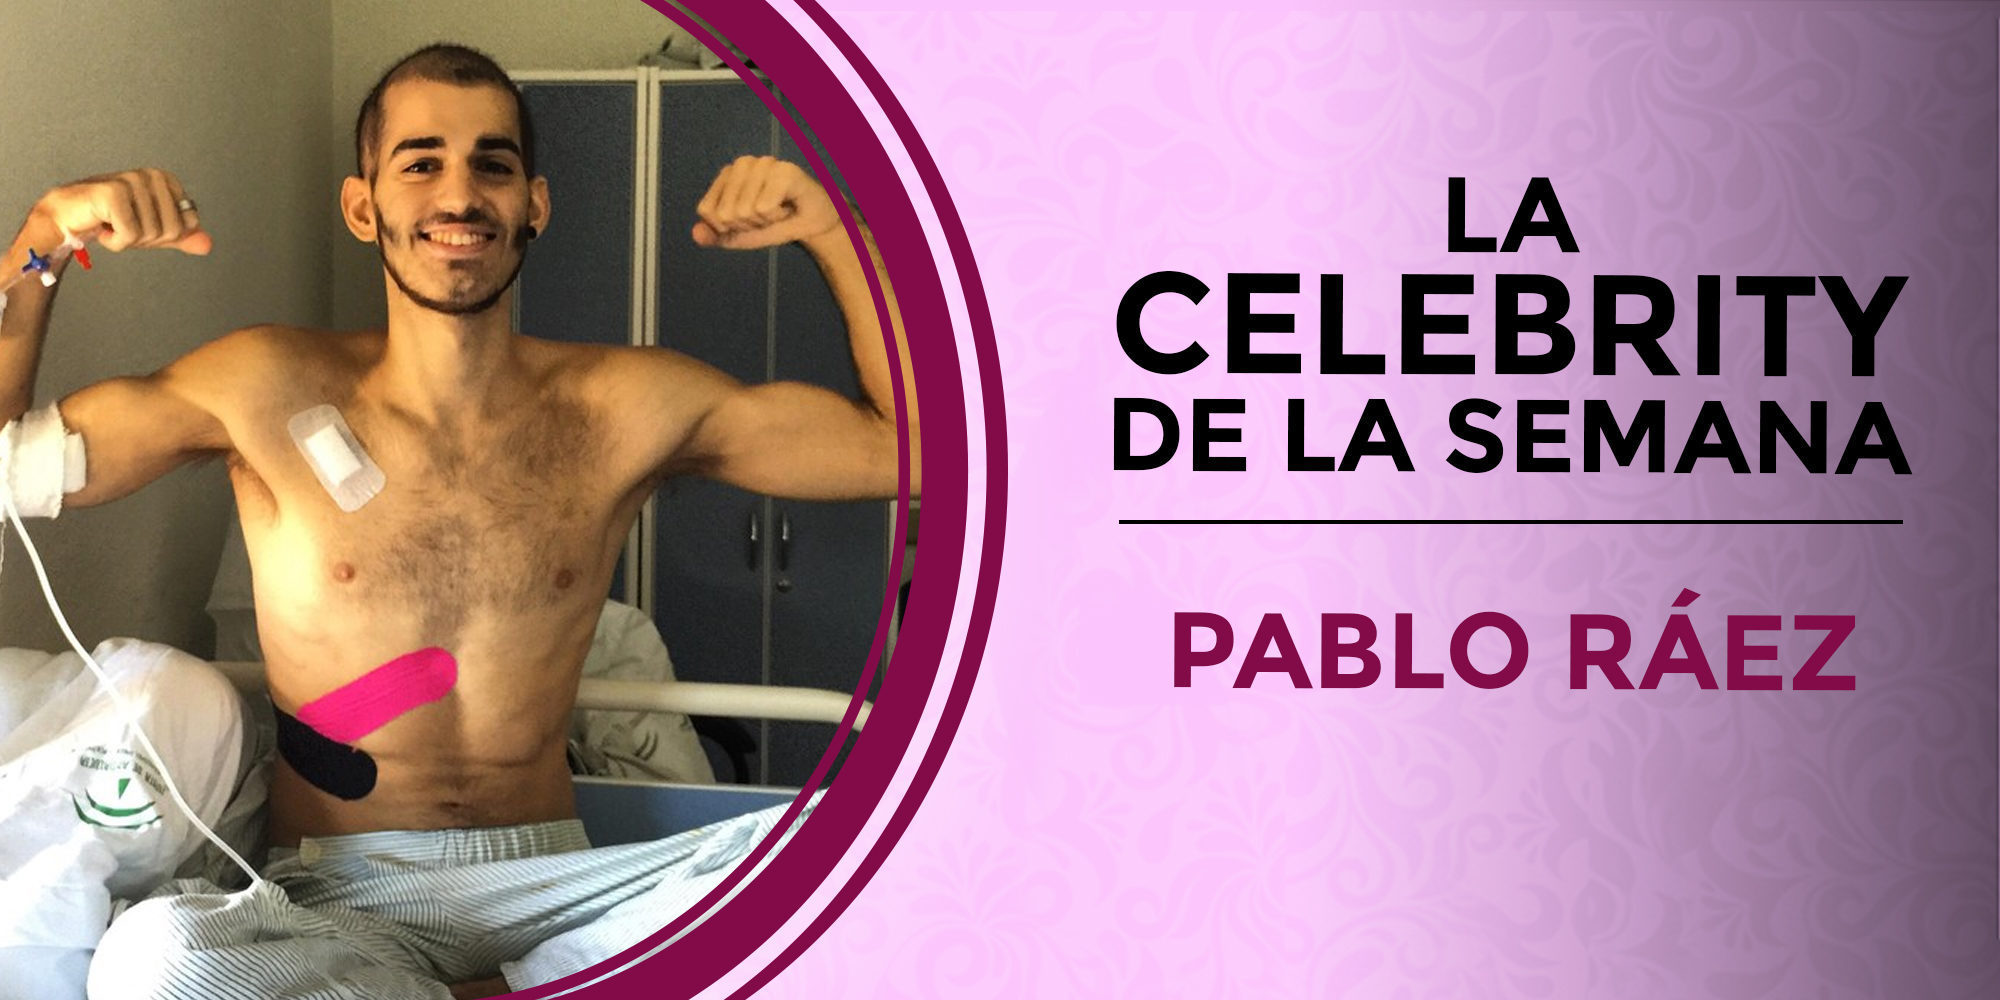 Pablo Ráez, el joven luchador que ha dejado un legado increíble de donaciones